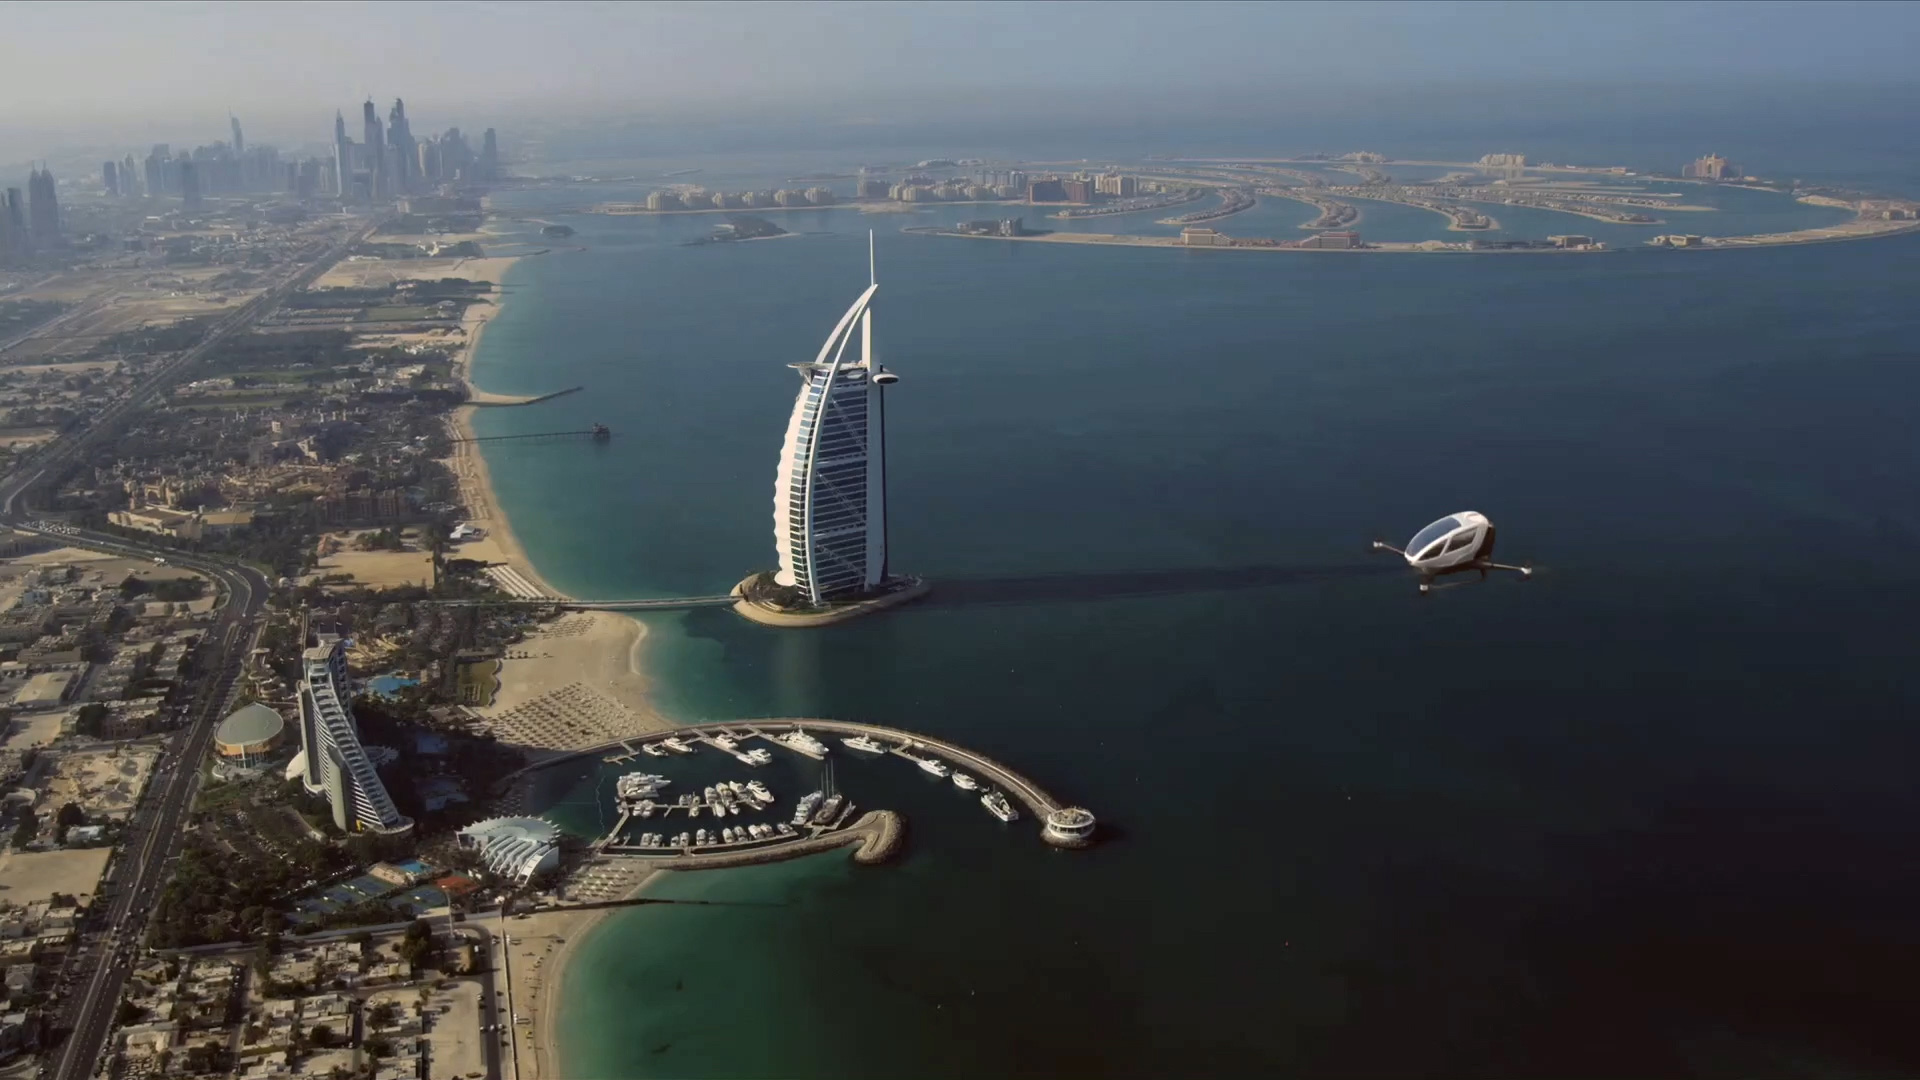 Taxis autónomos: Un prototipo de Ehang surca los cielos de Dubai, cerca del Burj Al Arab, el mejor hotel del mundo.